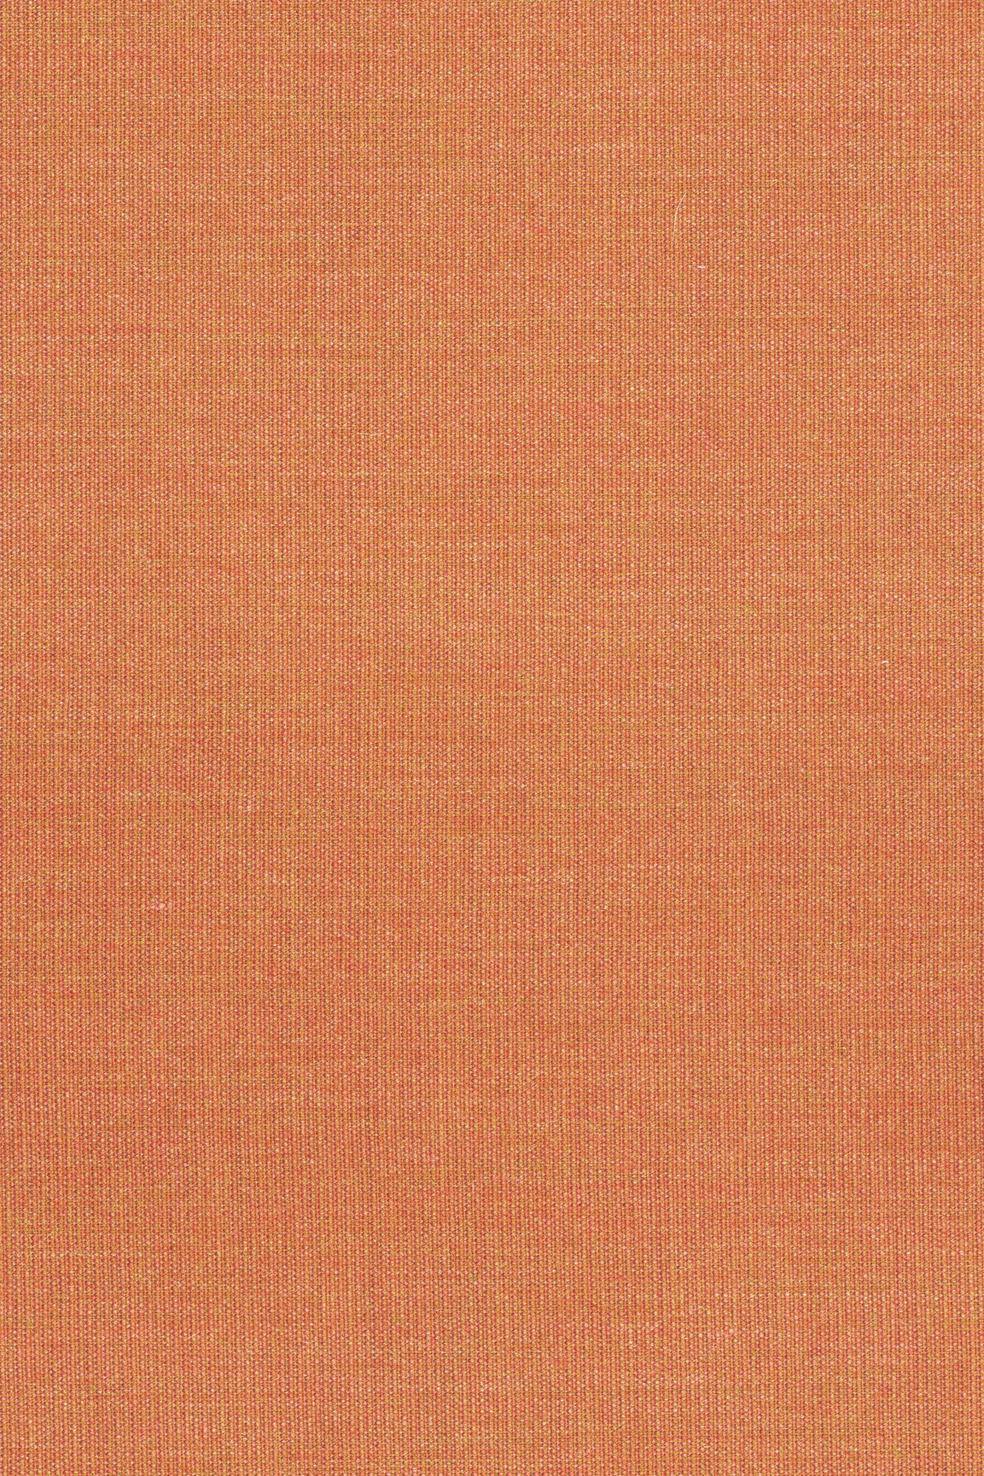 Fabric sample Canvas 2 556 orange